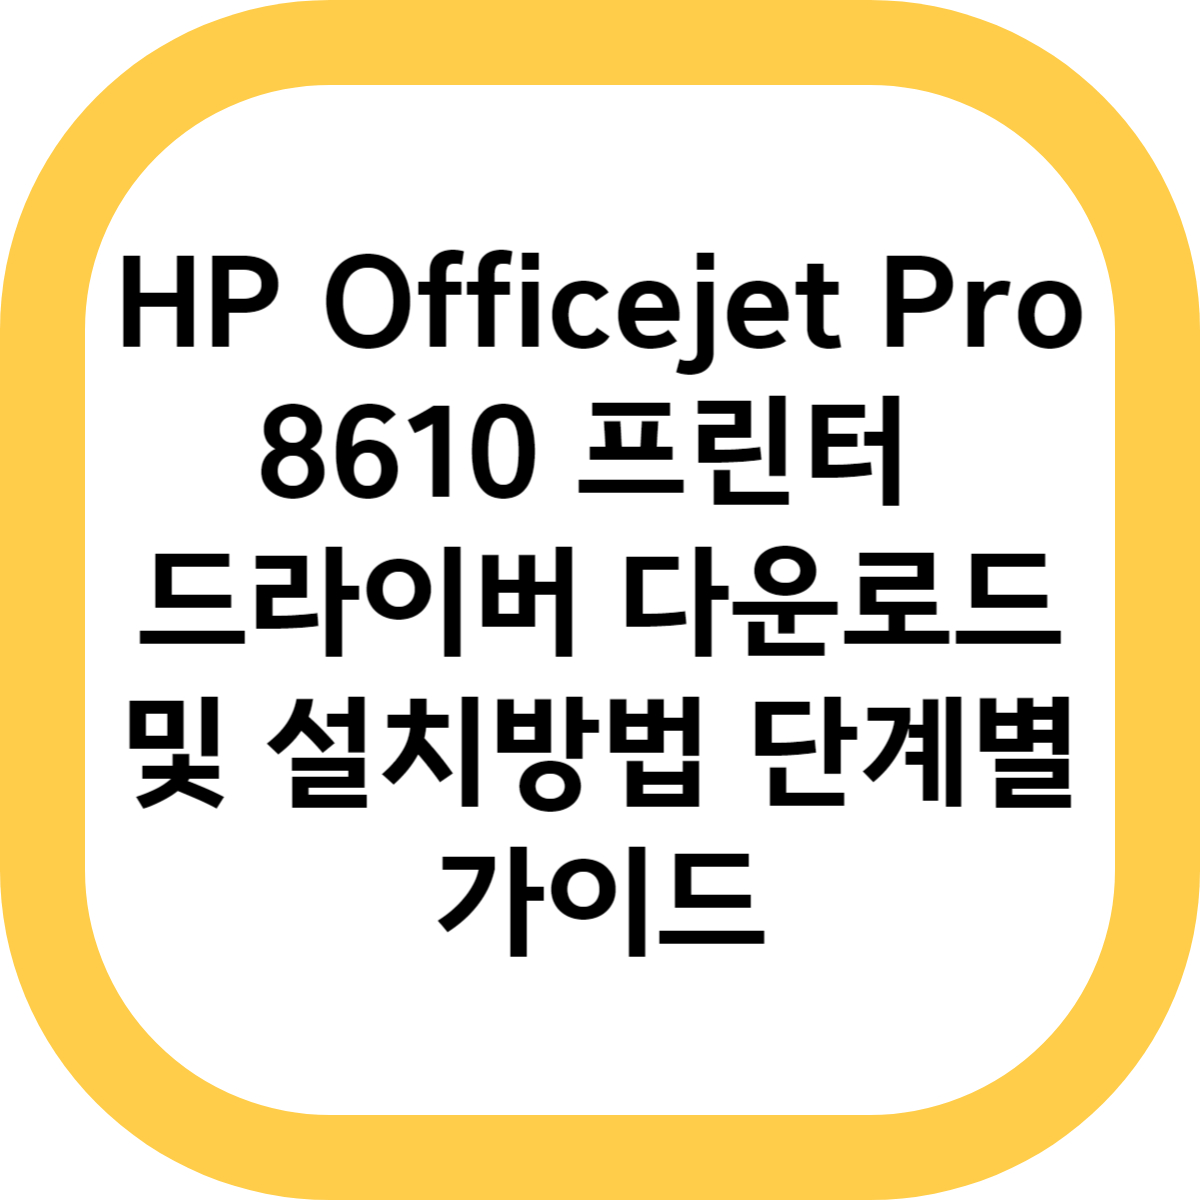 HP Officejet Pro 8610 프린터 드라이버 다운로드 및 설치방법 단계별 가이드